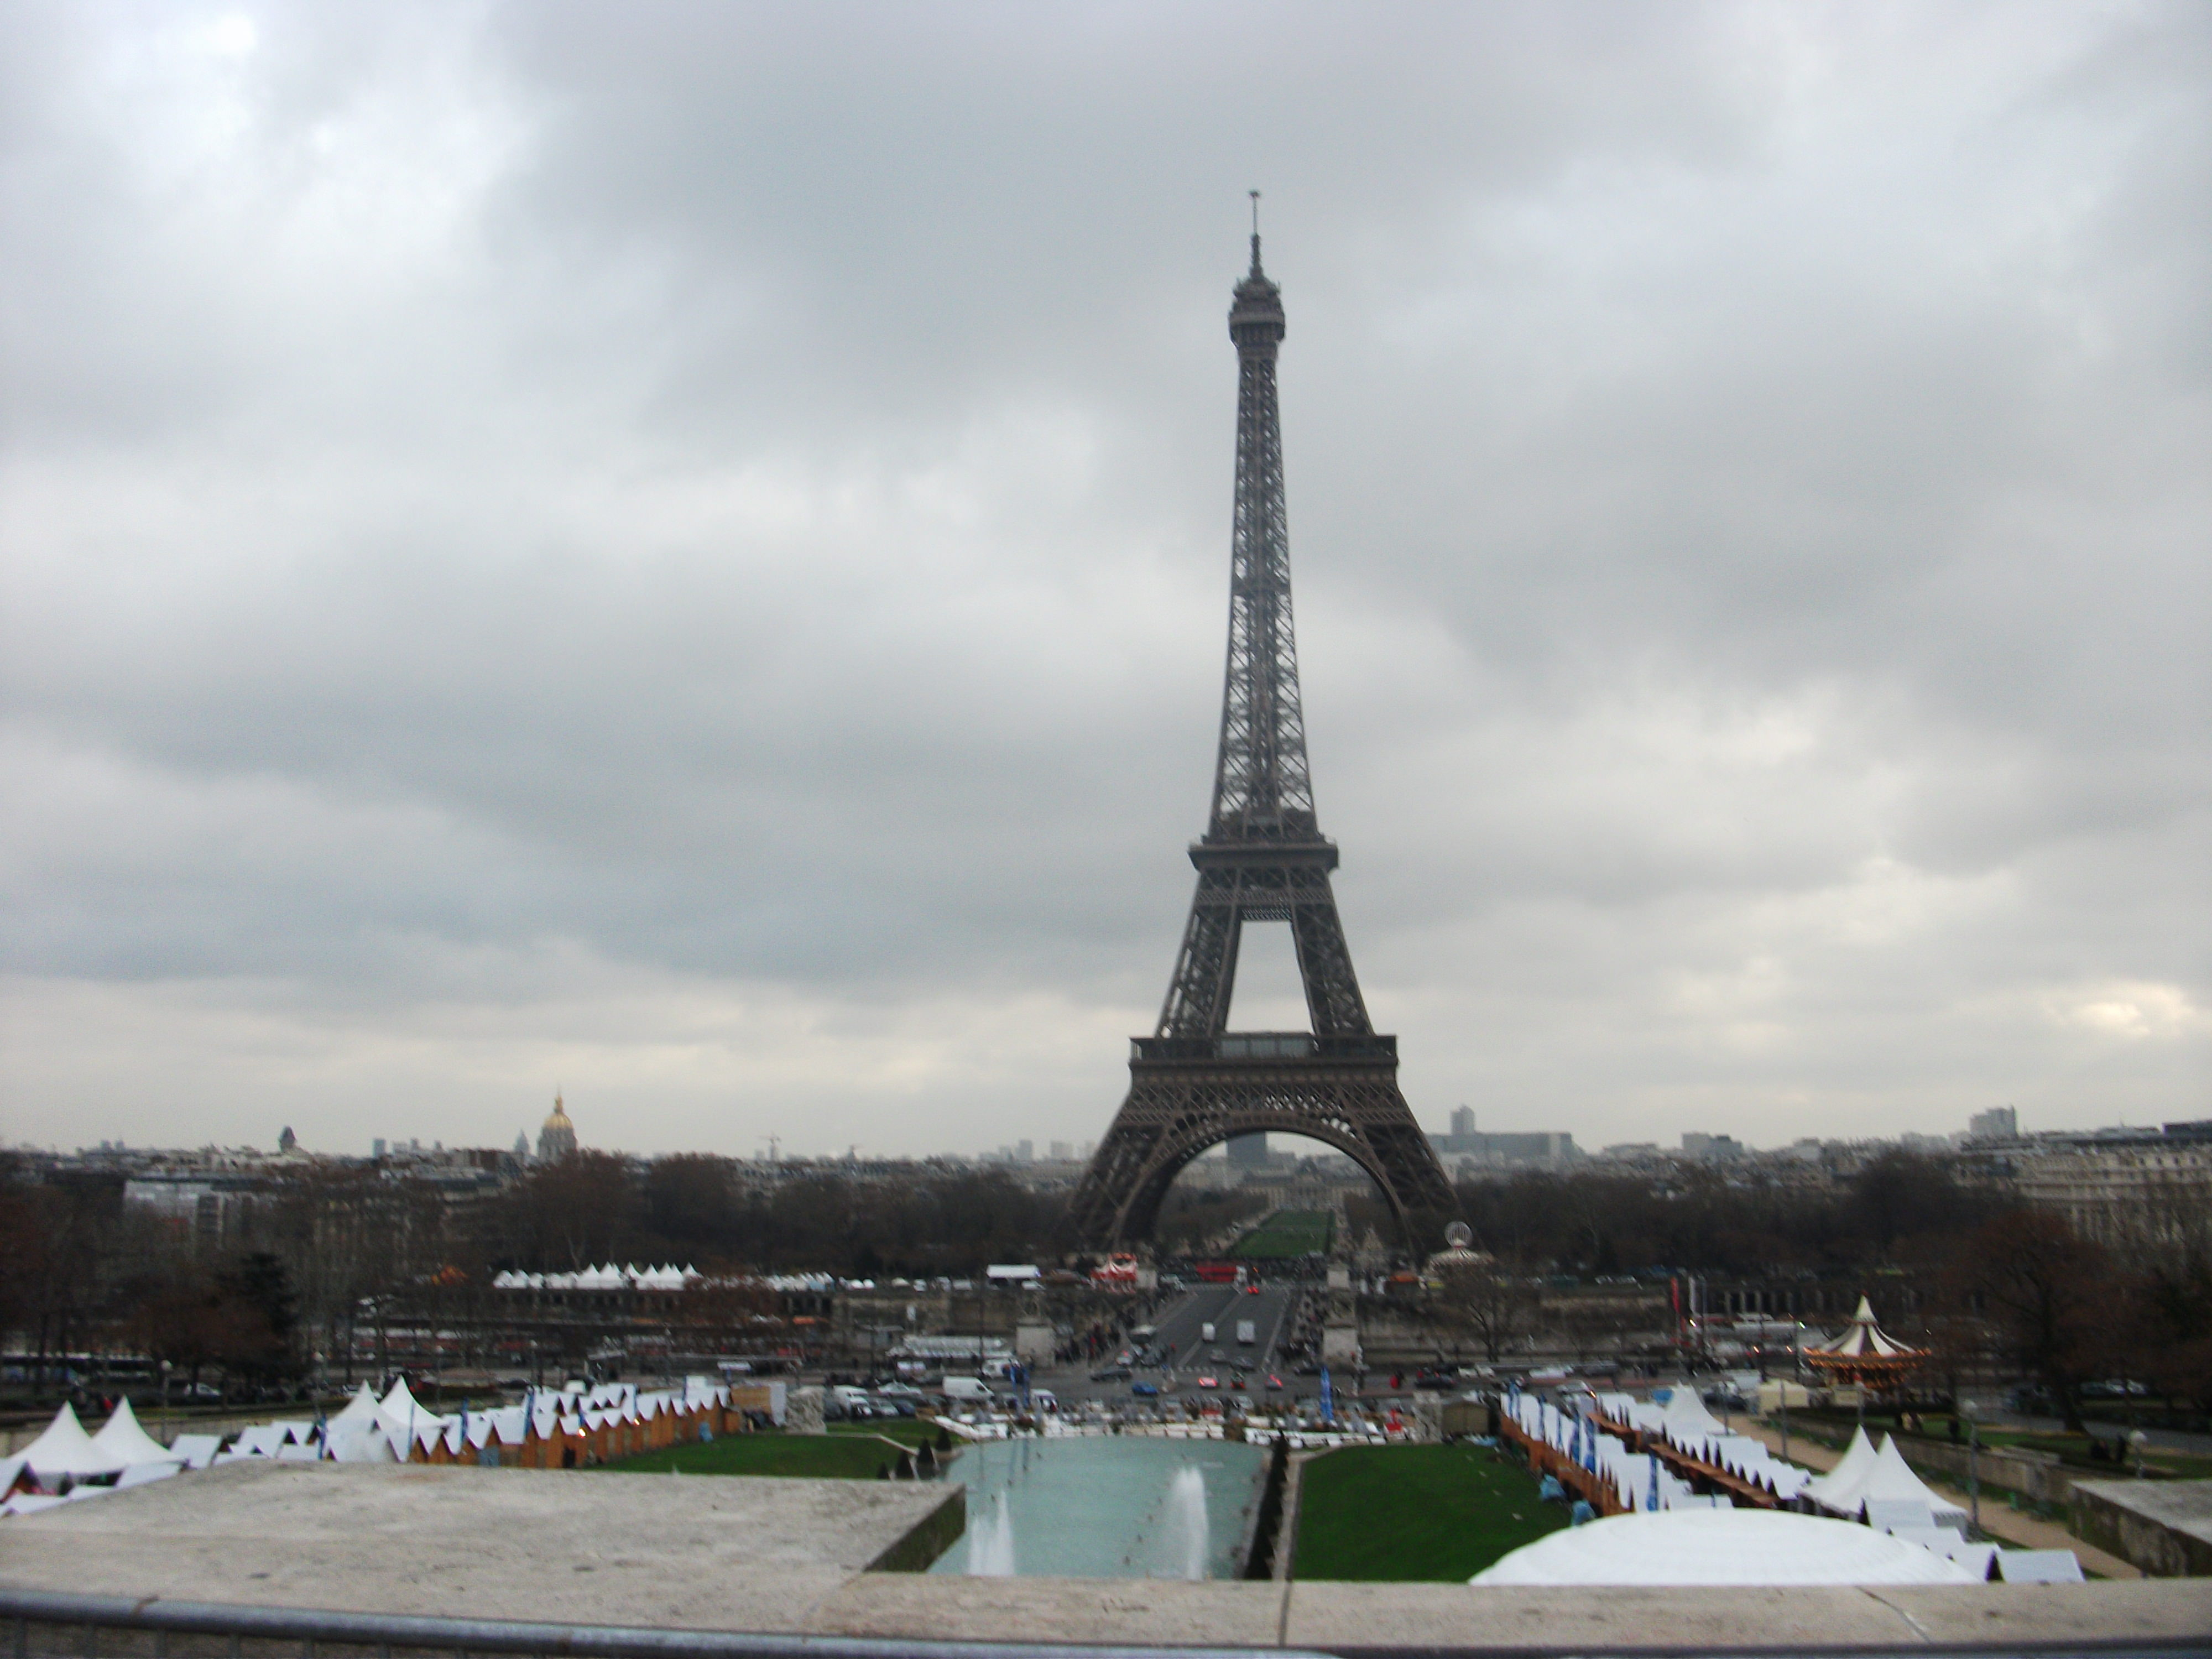 La Tour Eiffel, Paris, France, December 2011